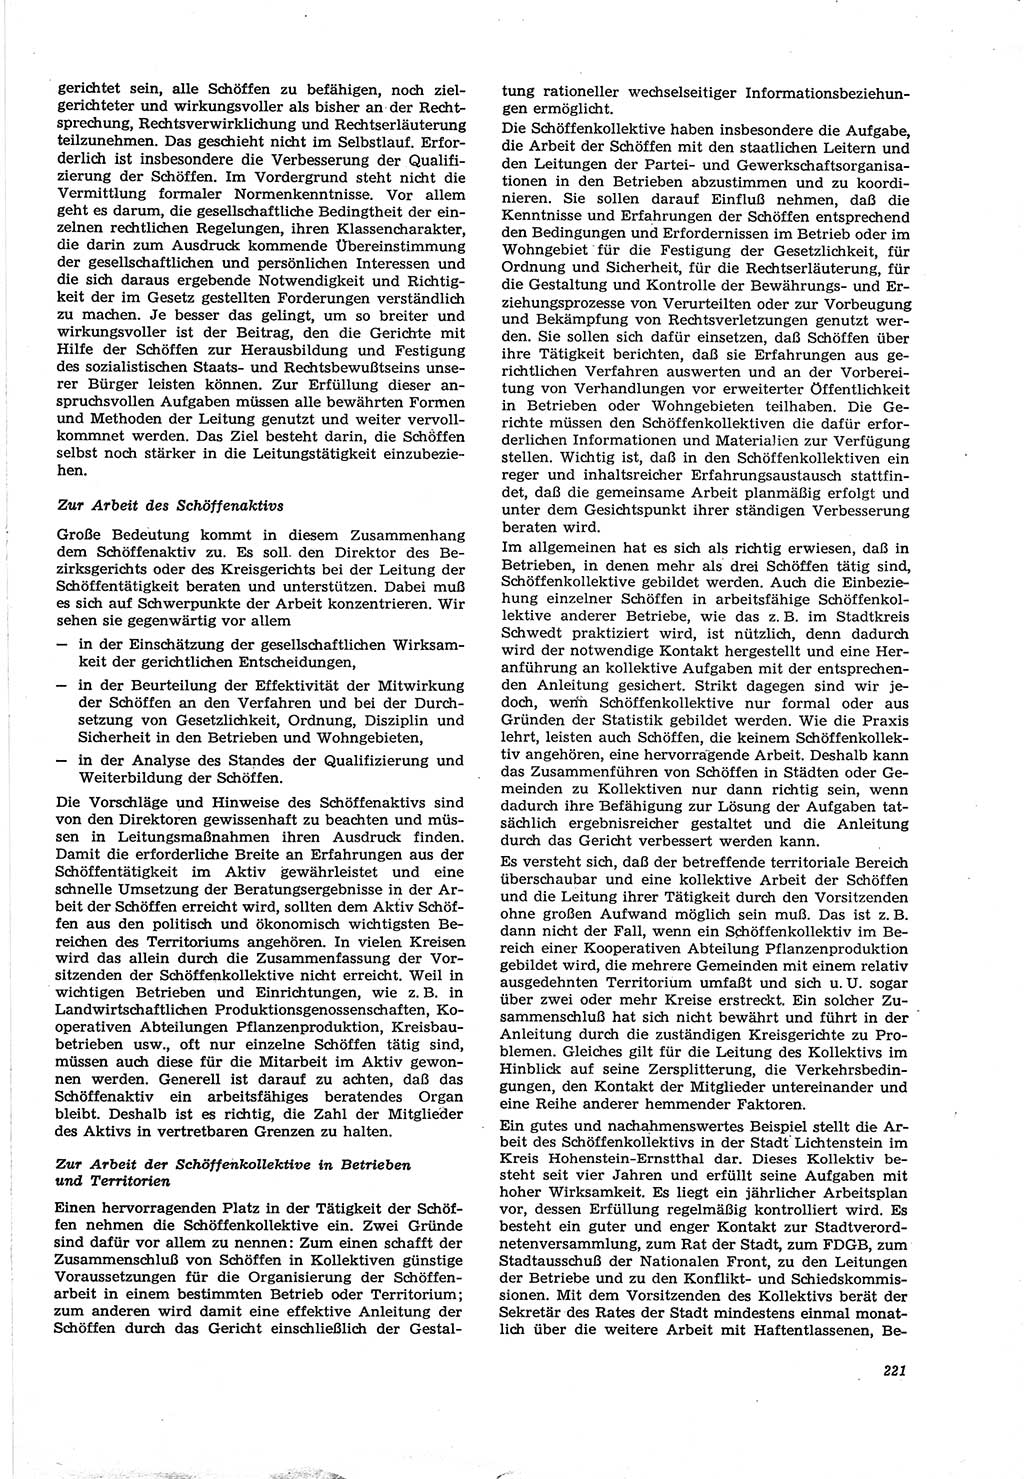 Neue Justiz (NJ), Zeitschrift für Recht und Rechtswissenschaft [Deutsche Demokratische Republik (DDR)], 30. Jahrgang 1976, Seite 221 (NJ DDR 1976, S. 221)